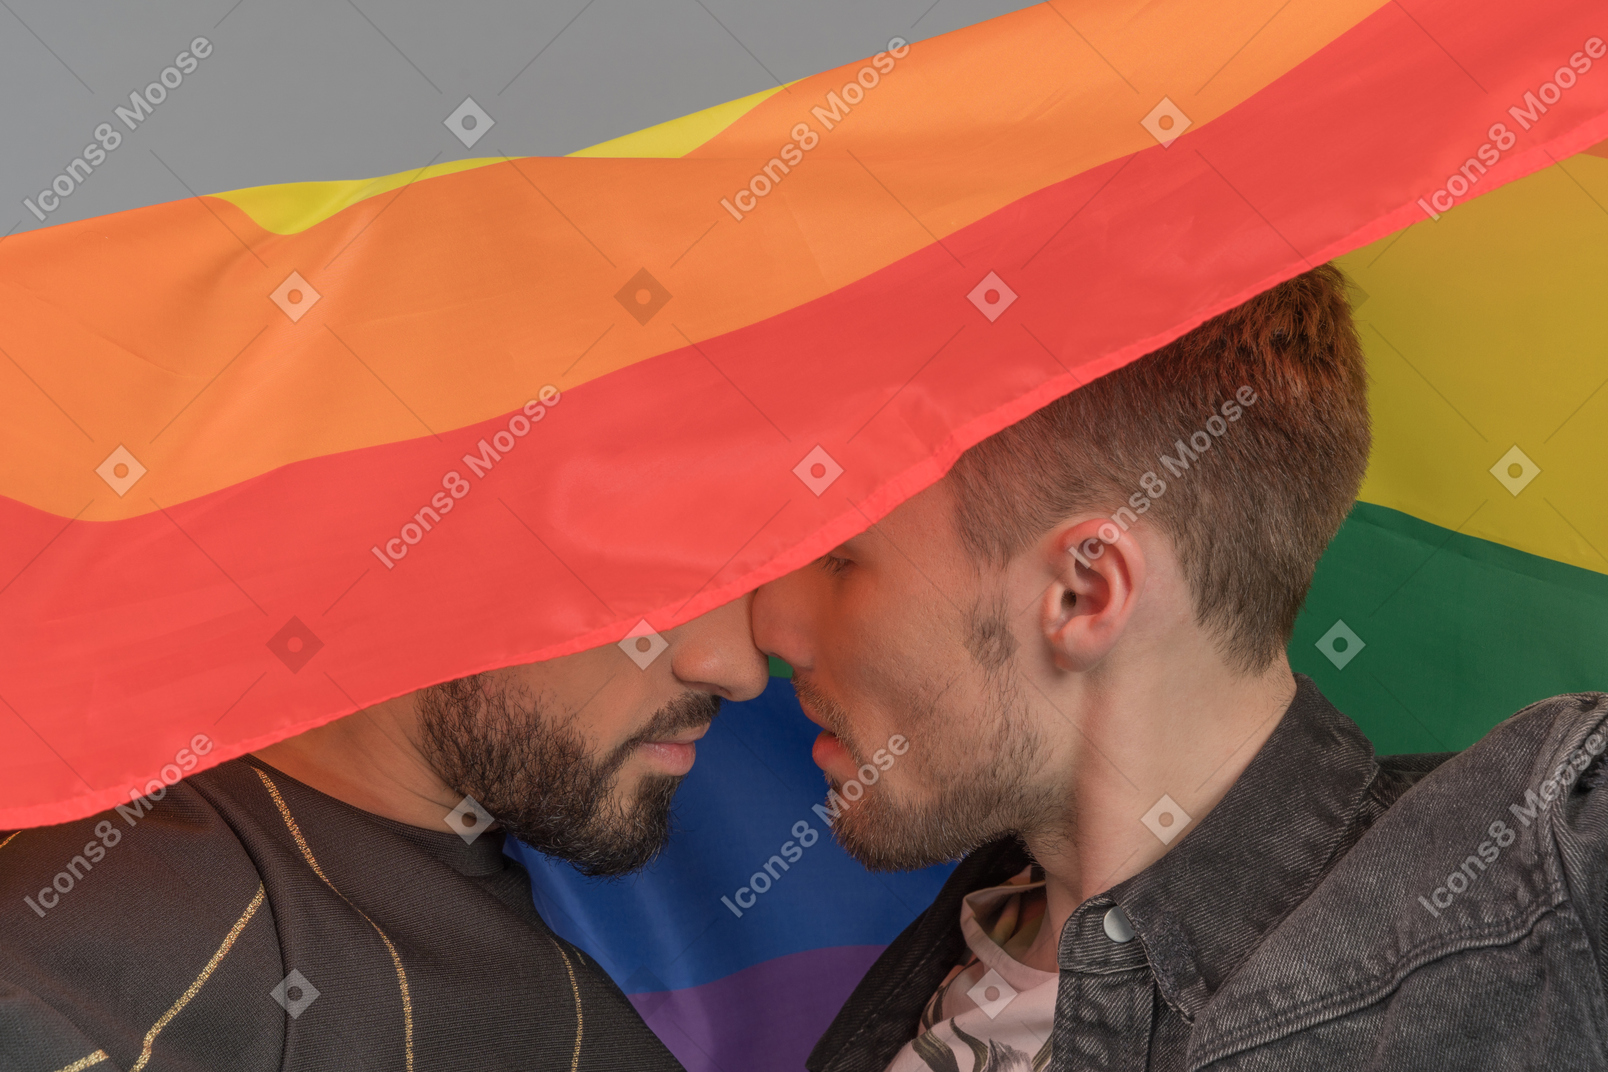 Primer plano de dos jóvenes tocándose las narices íntimamente bajo la bandera lgbt